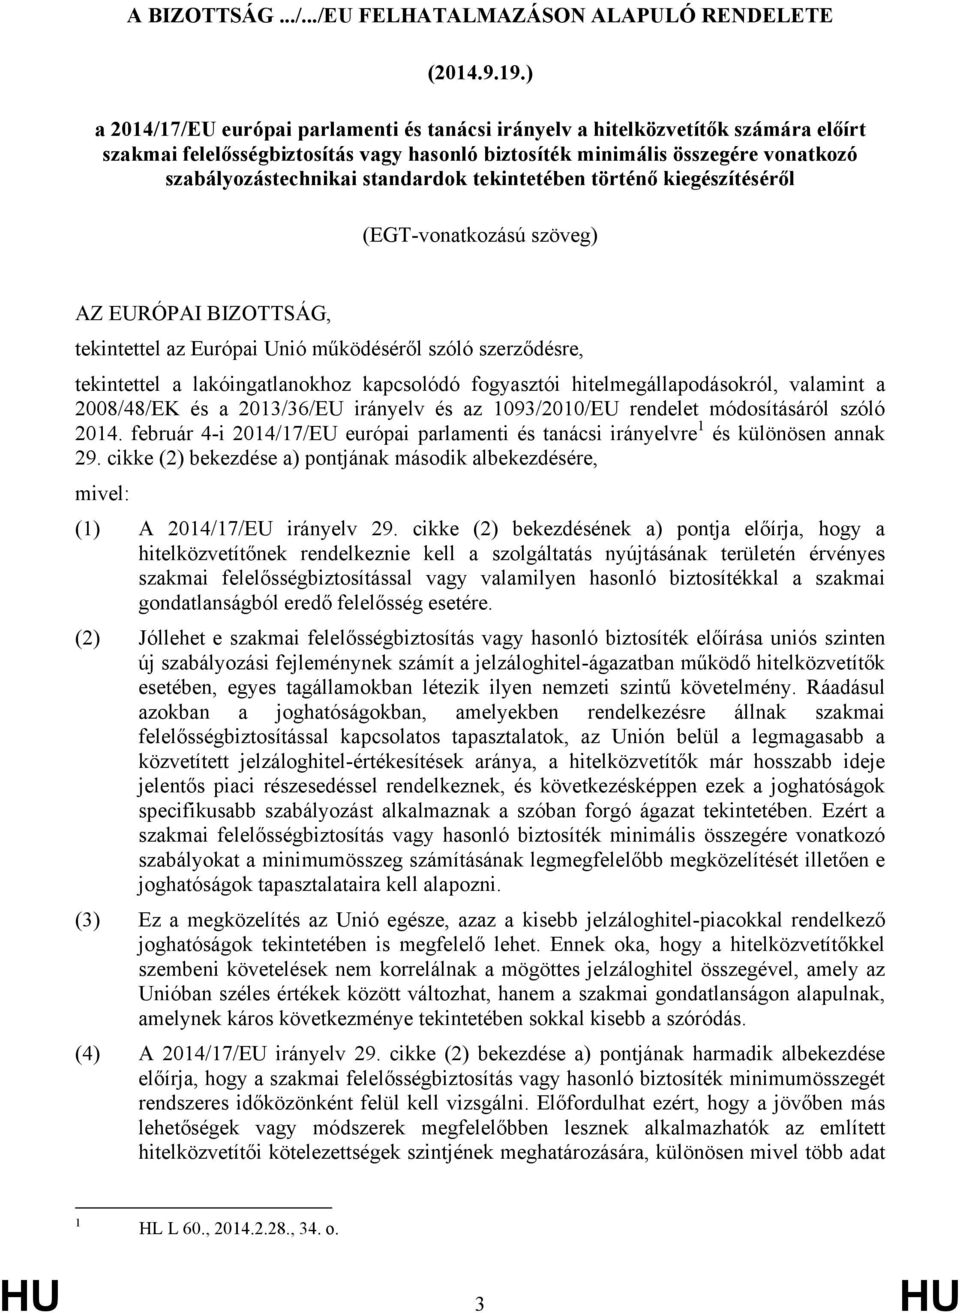 BIZOTTSÁG, tekintettel az Európai Unió működéséről szóló szerződésre, tekintettel a lakóingatlanokhoz kapcsolódó fogyasztói hitelmegállapodásokról, valamint a 2008/48/EK és a 2013/36/EU irányelv és